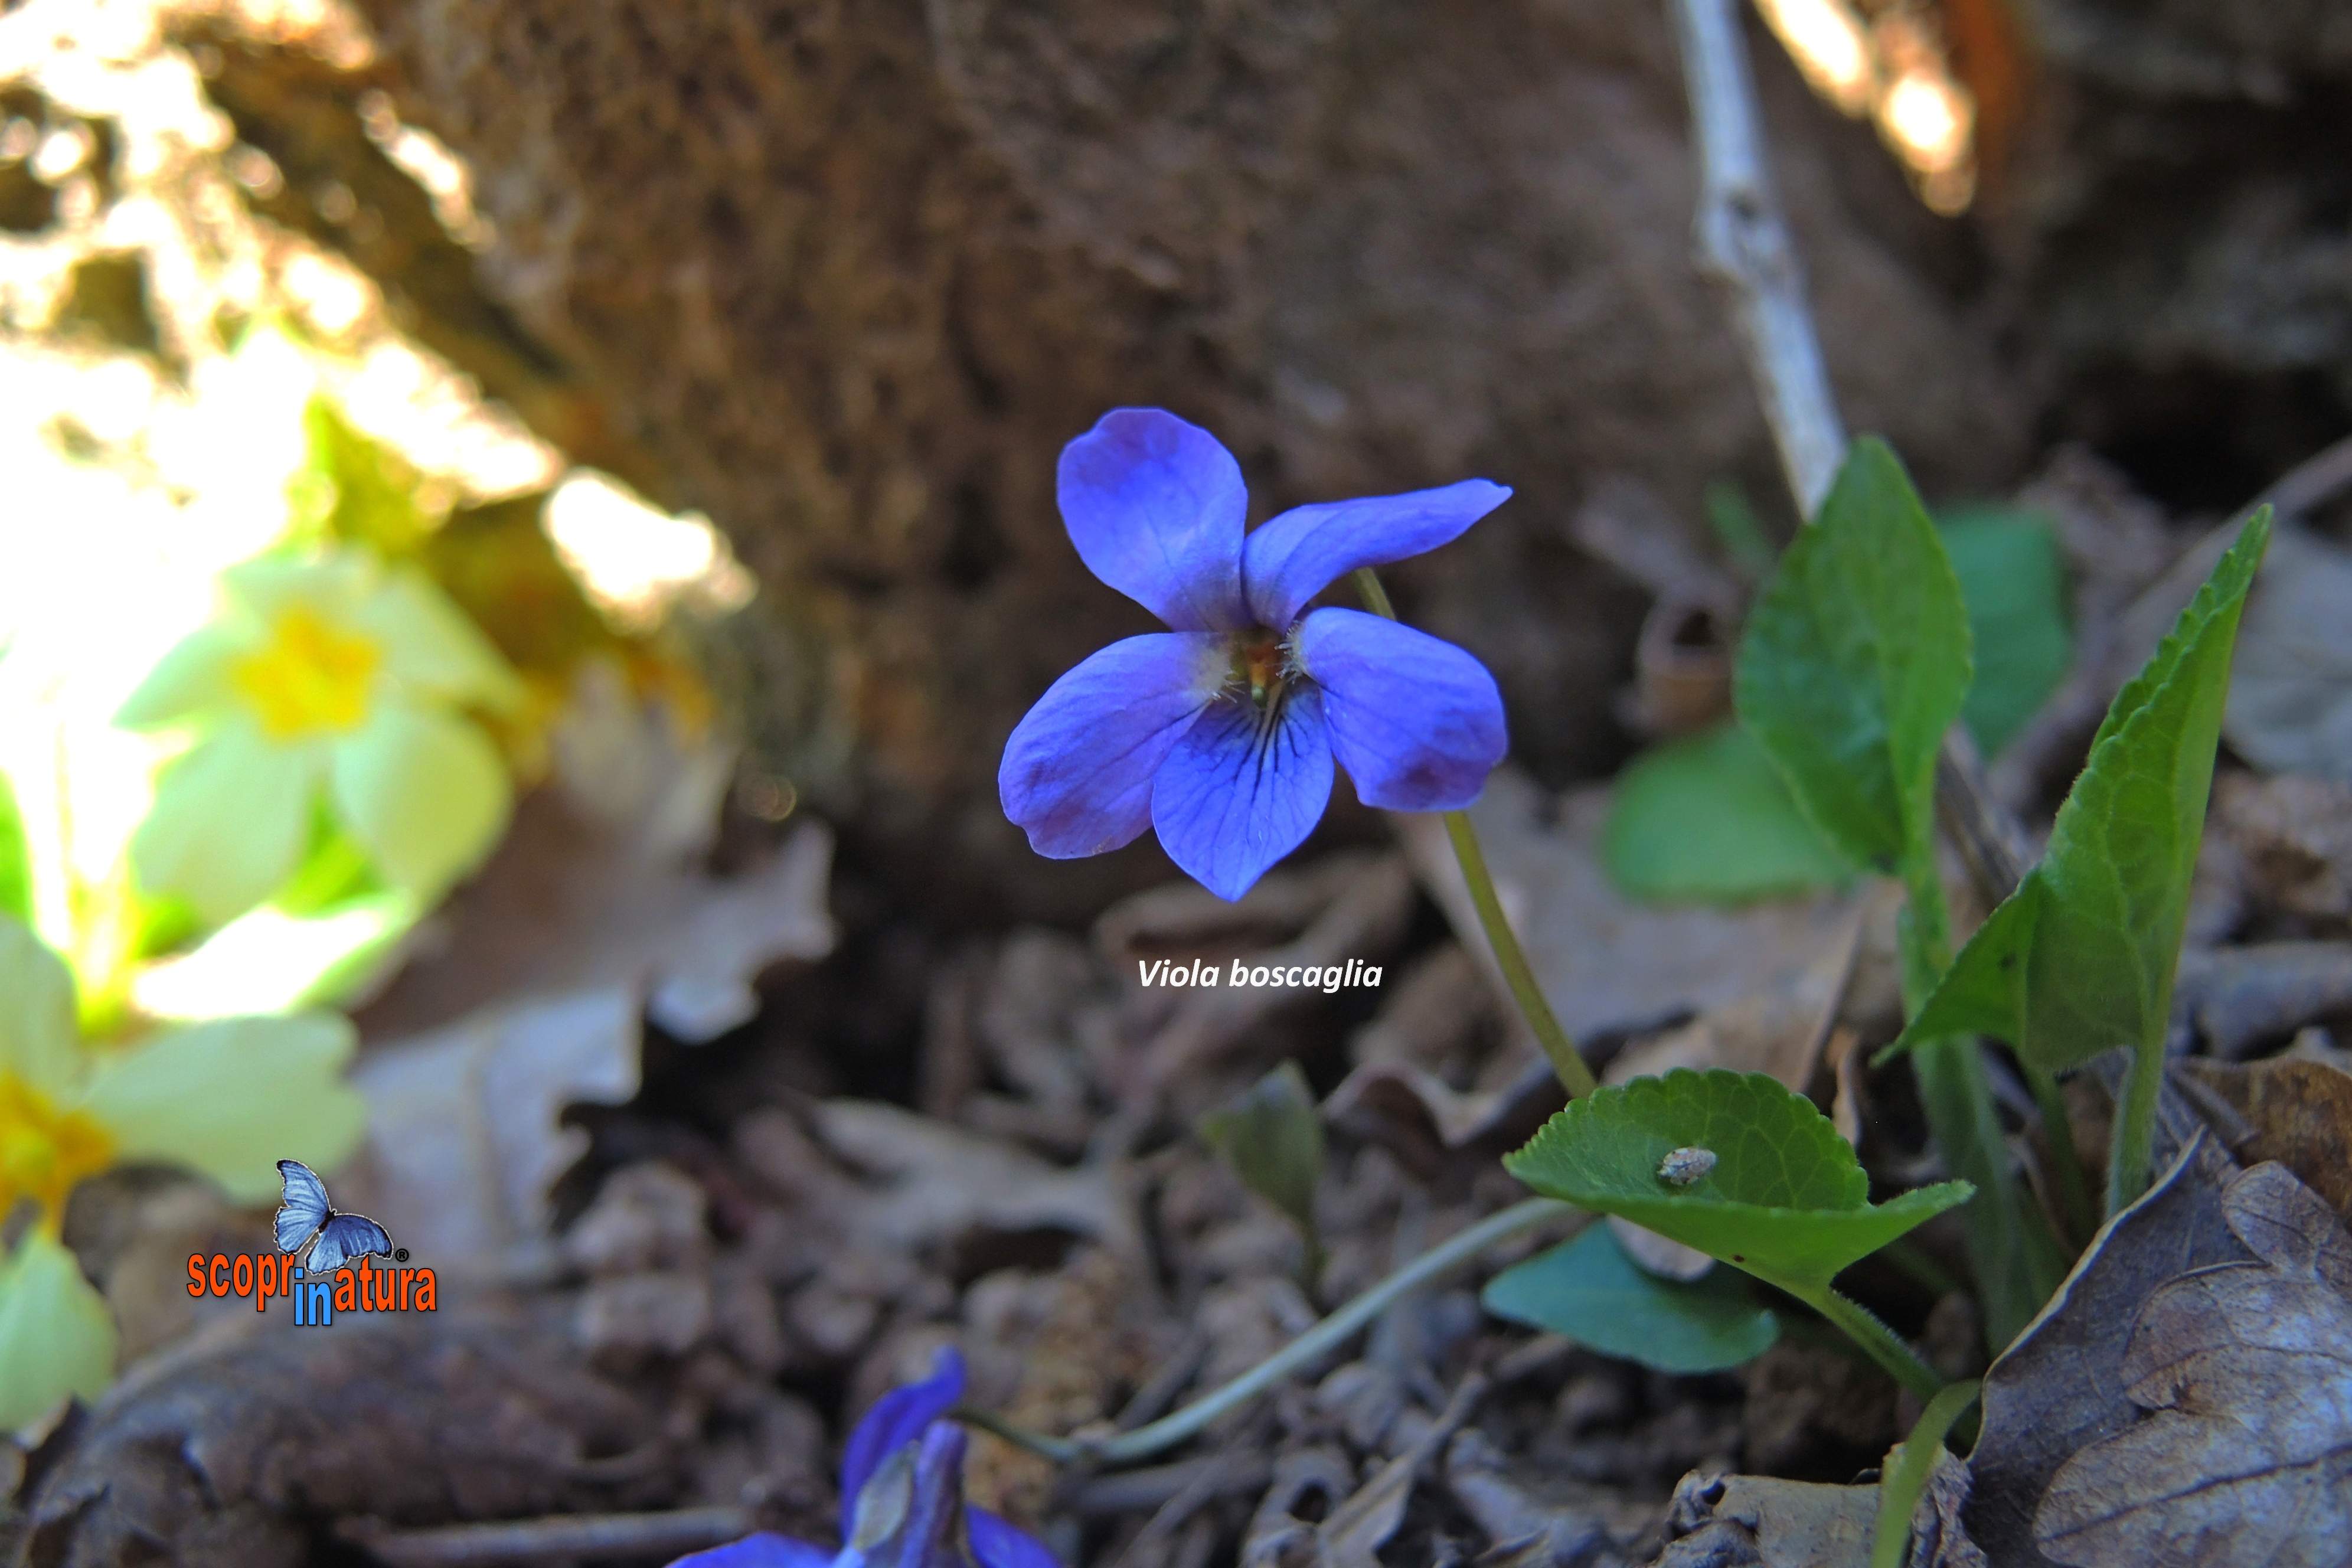 Viola boscaglia